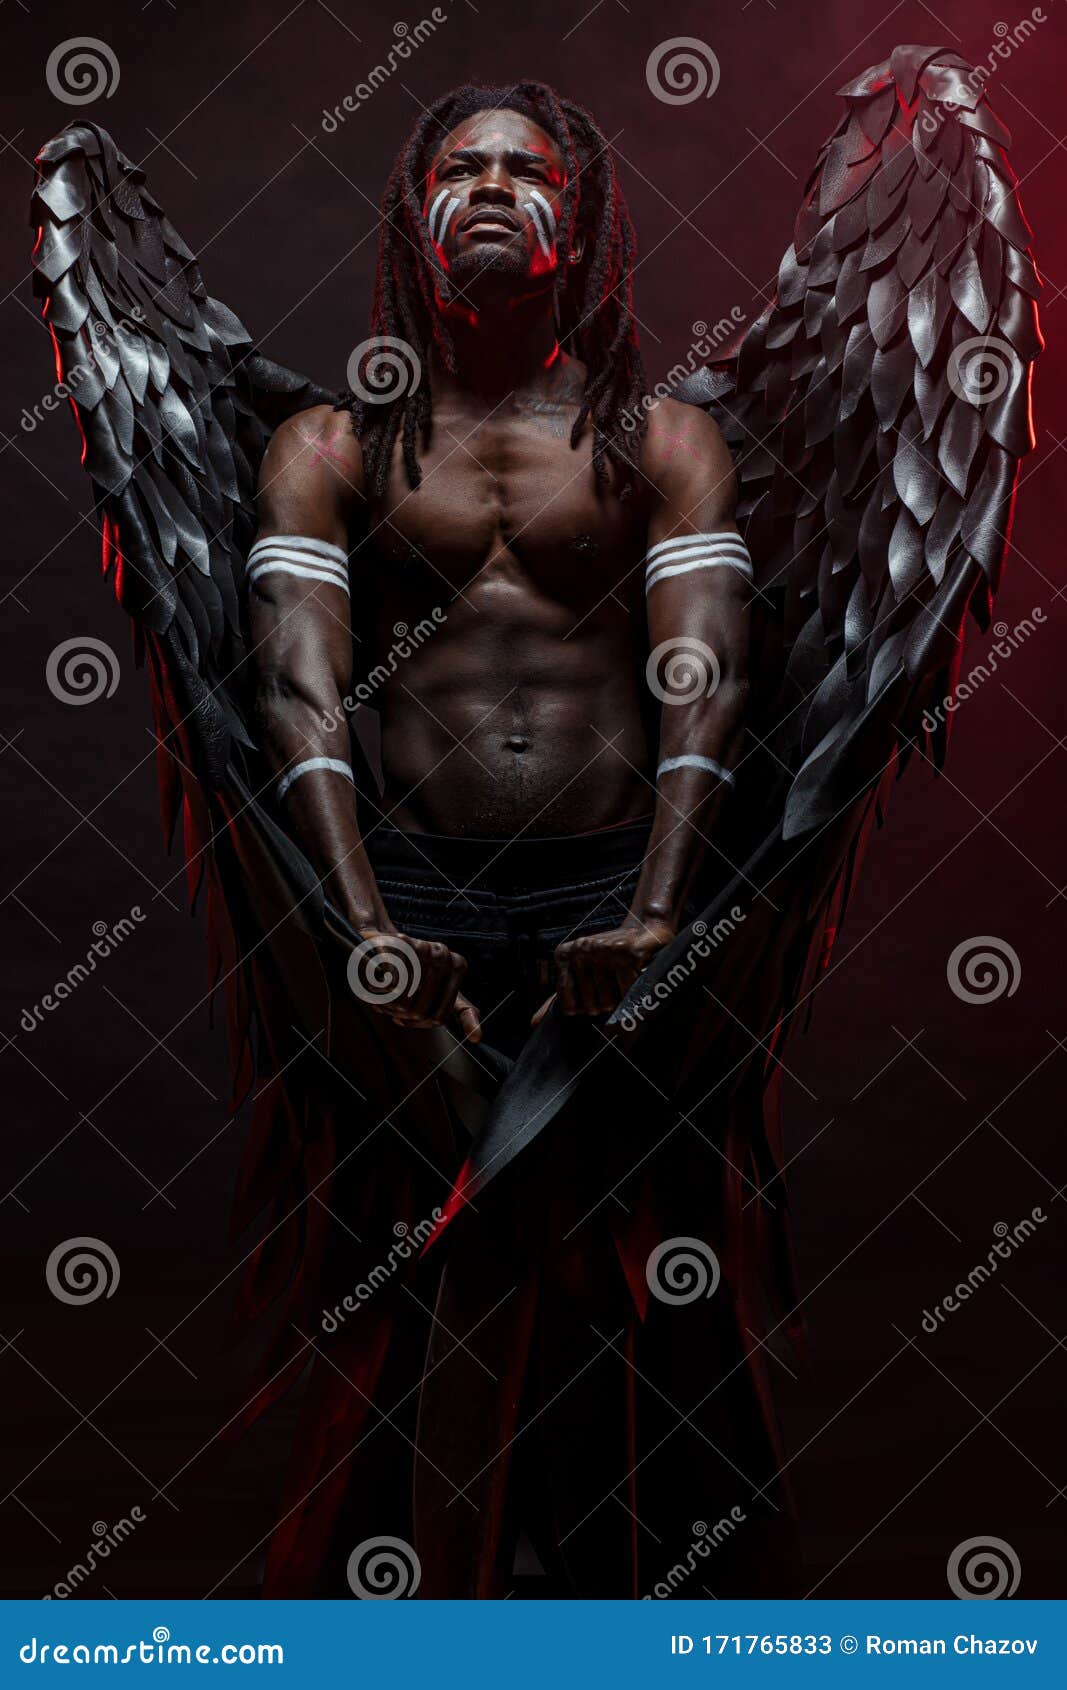 Engel schwarze flügel Stockfotos, lizenzfreie Engel schwarze